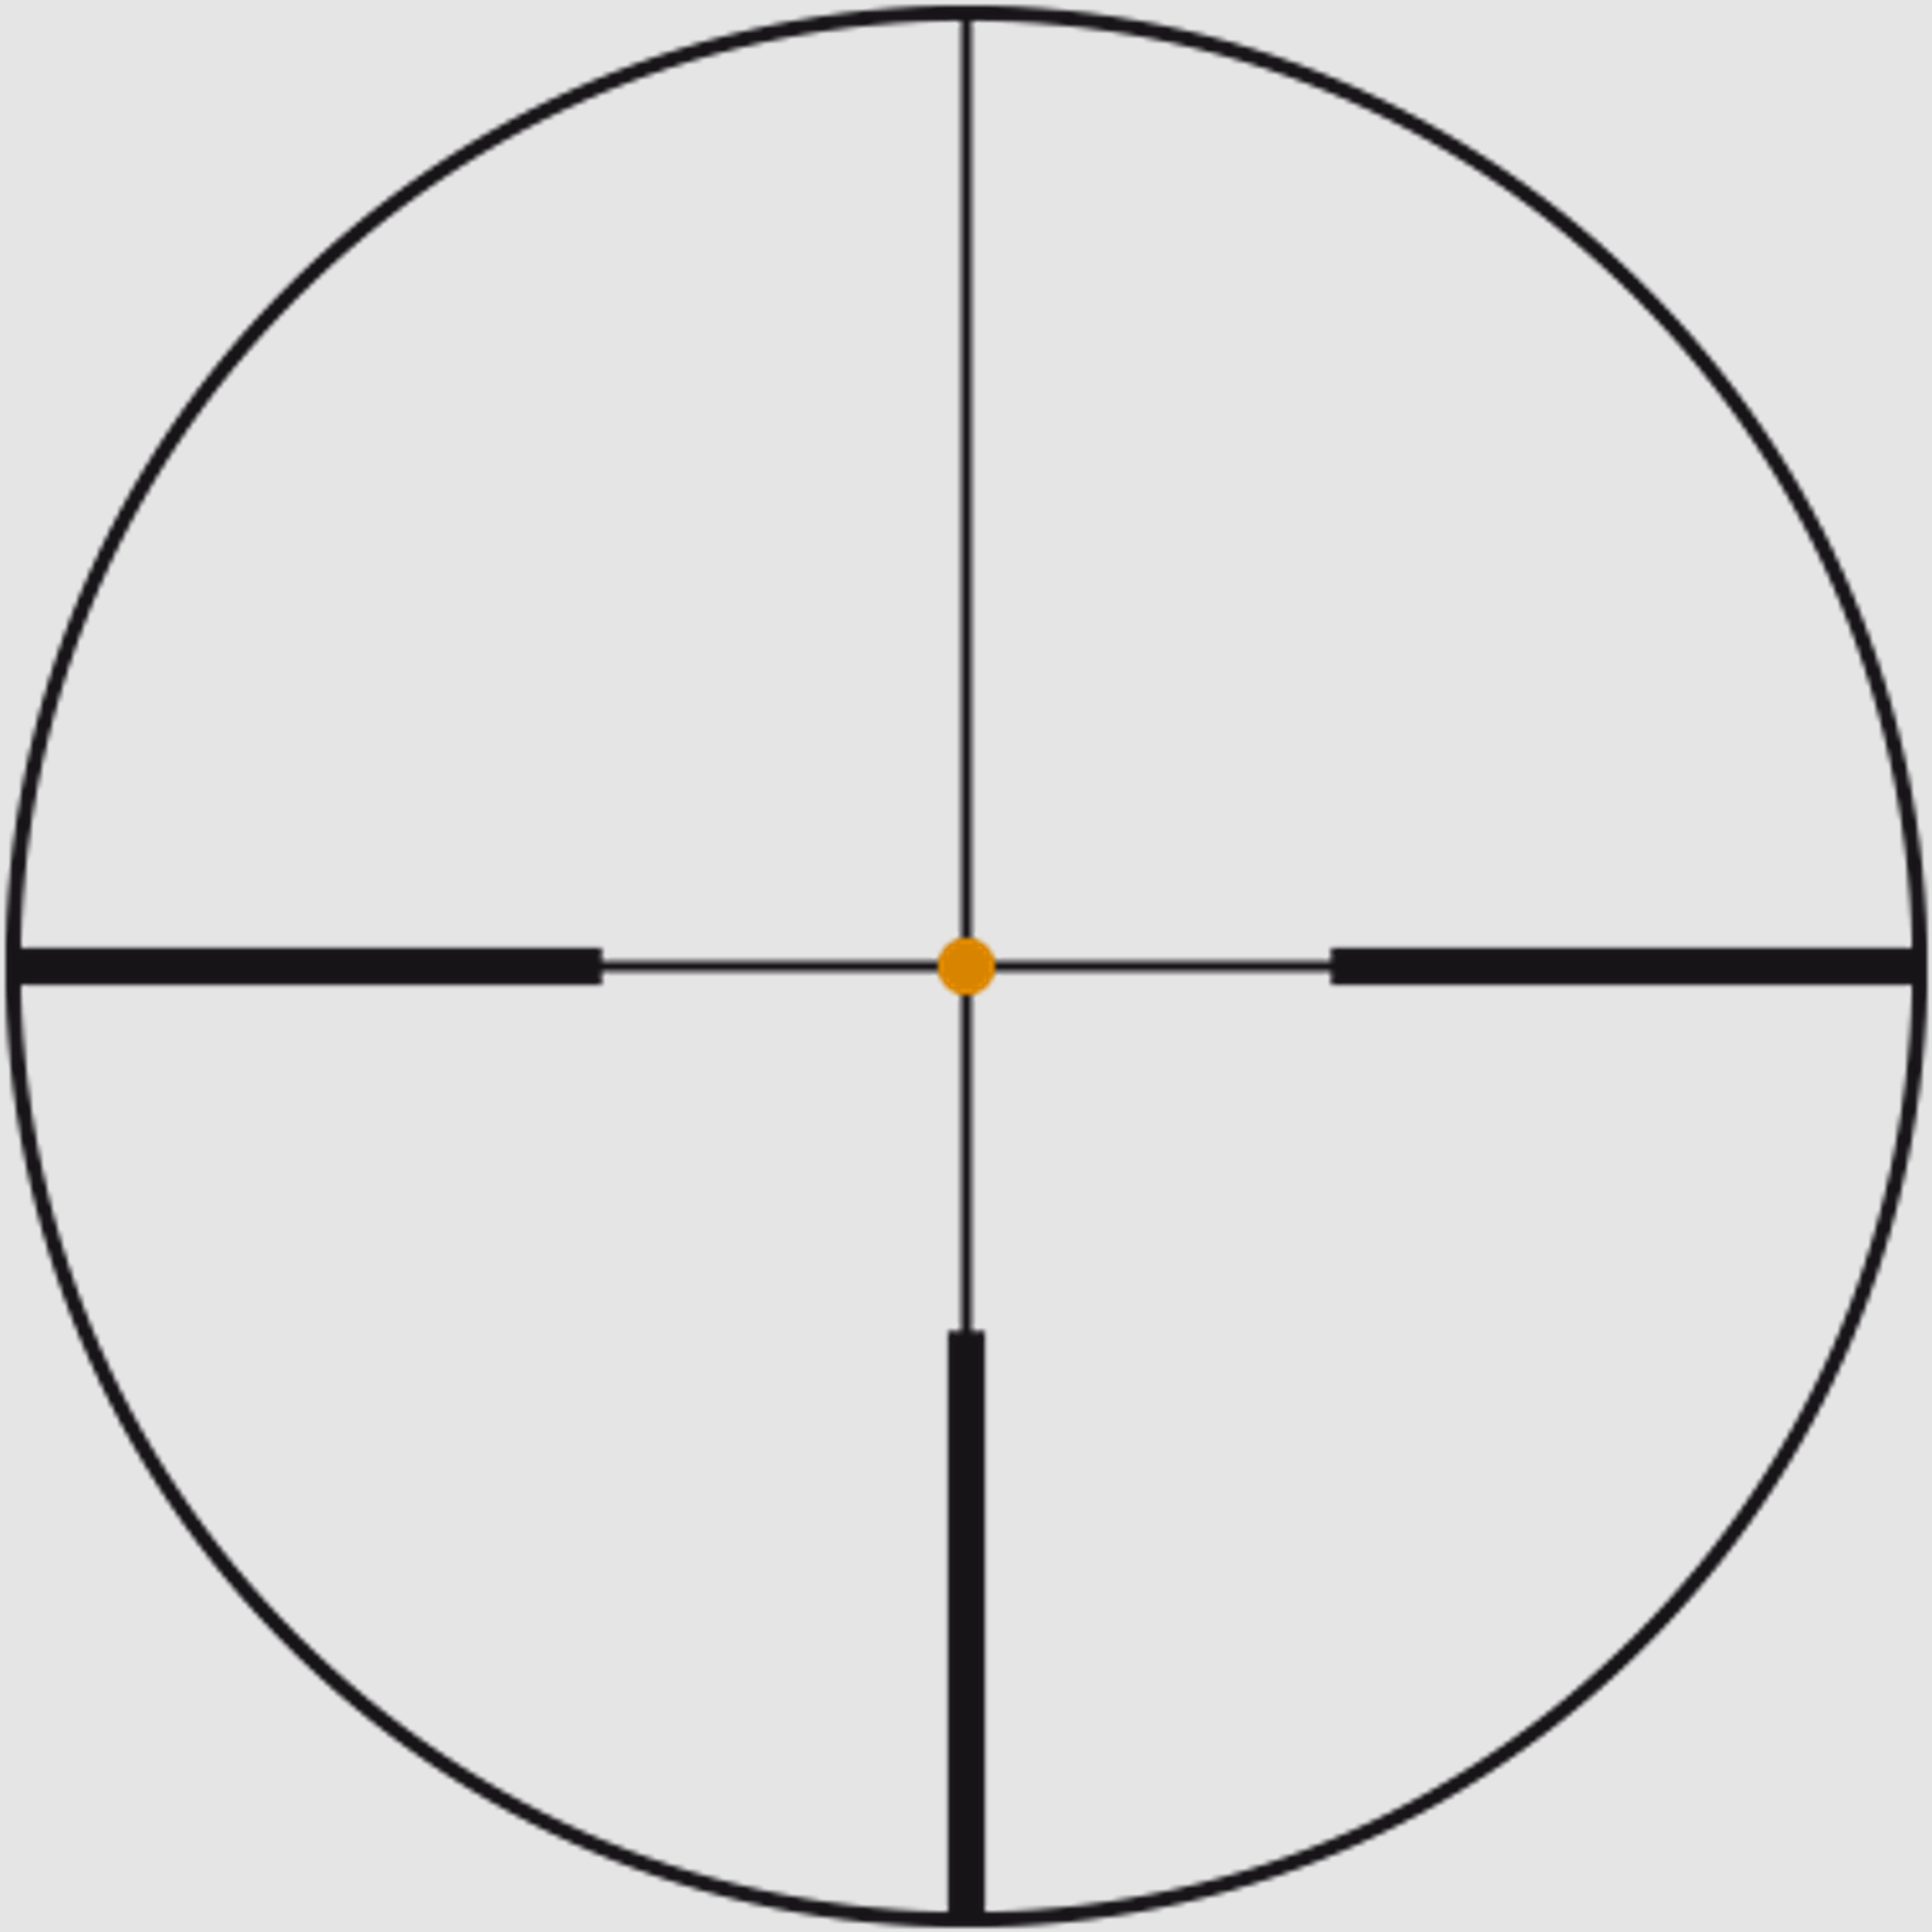 SWAROVSKI Zielfernrohr mit Leuchtabsehen 2-16x50 P Z8i L (30mm) Abs. 4A-I/4A-300I/BRX-I/4W-I